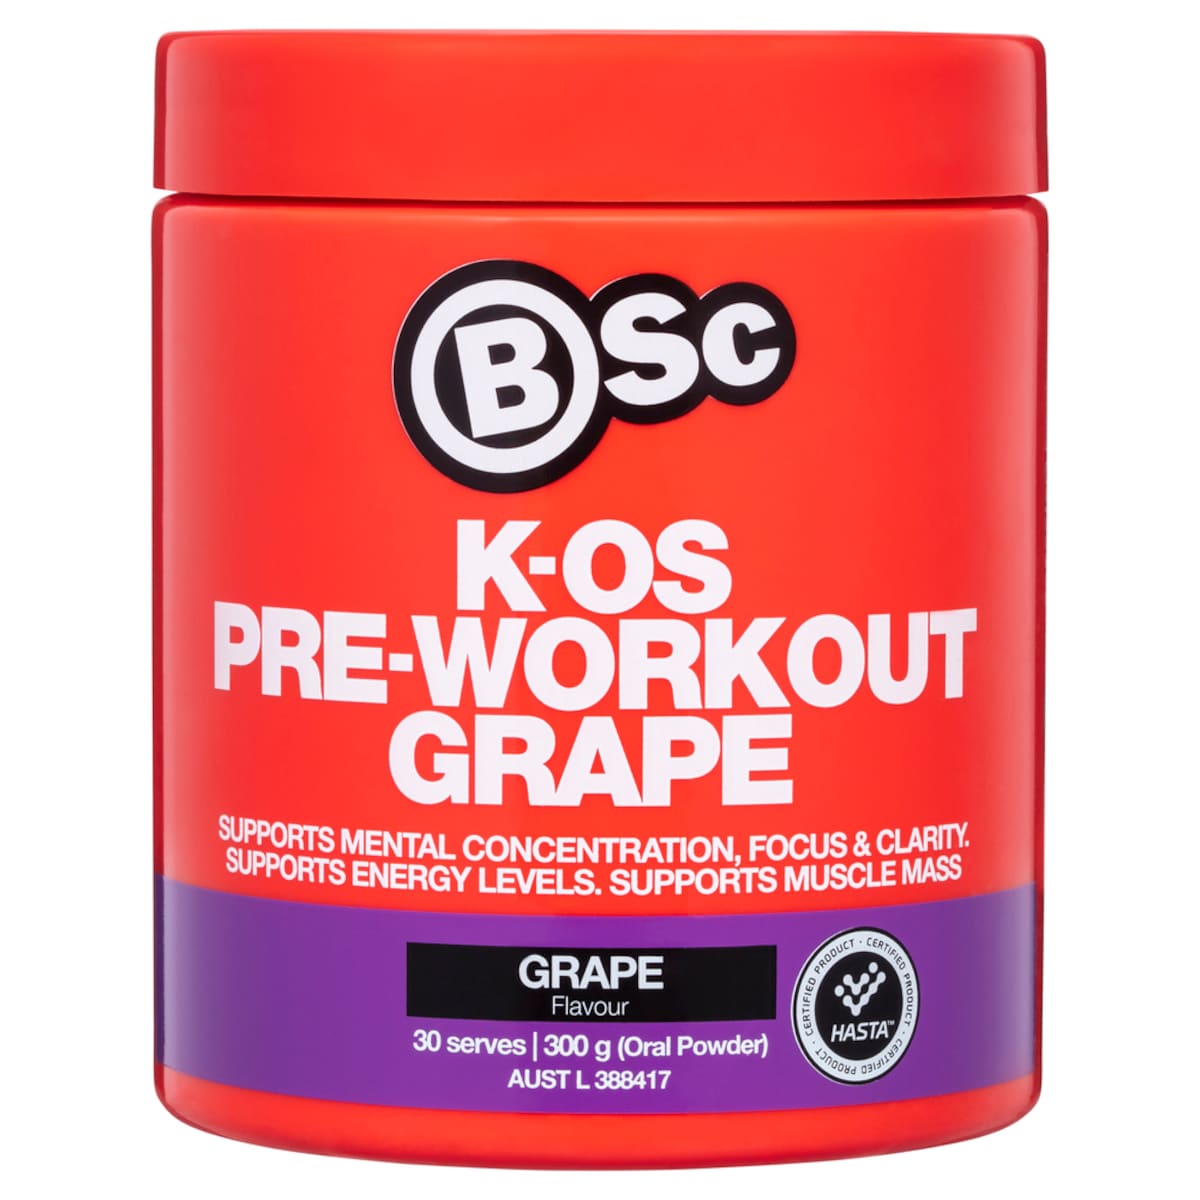 BSc Body Science K-OS Pre-Workout Grape 300g Australia